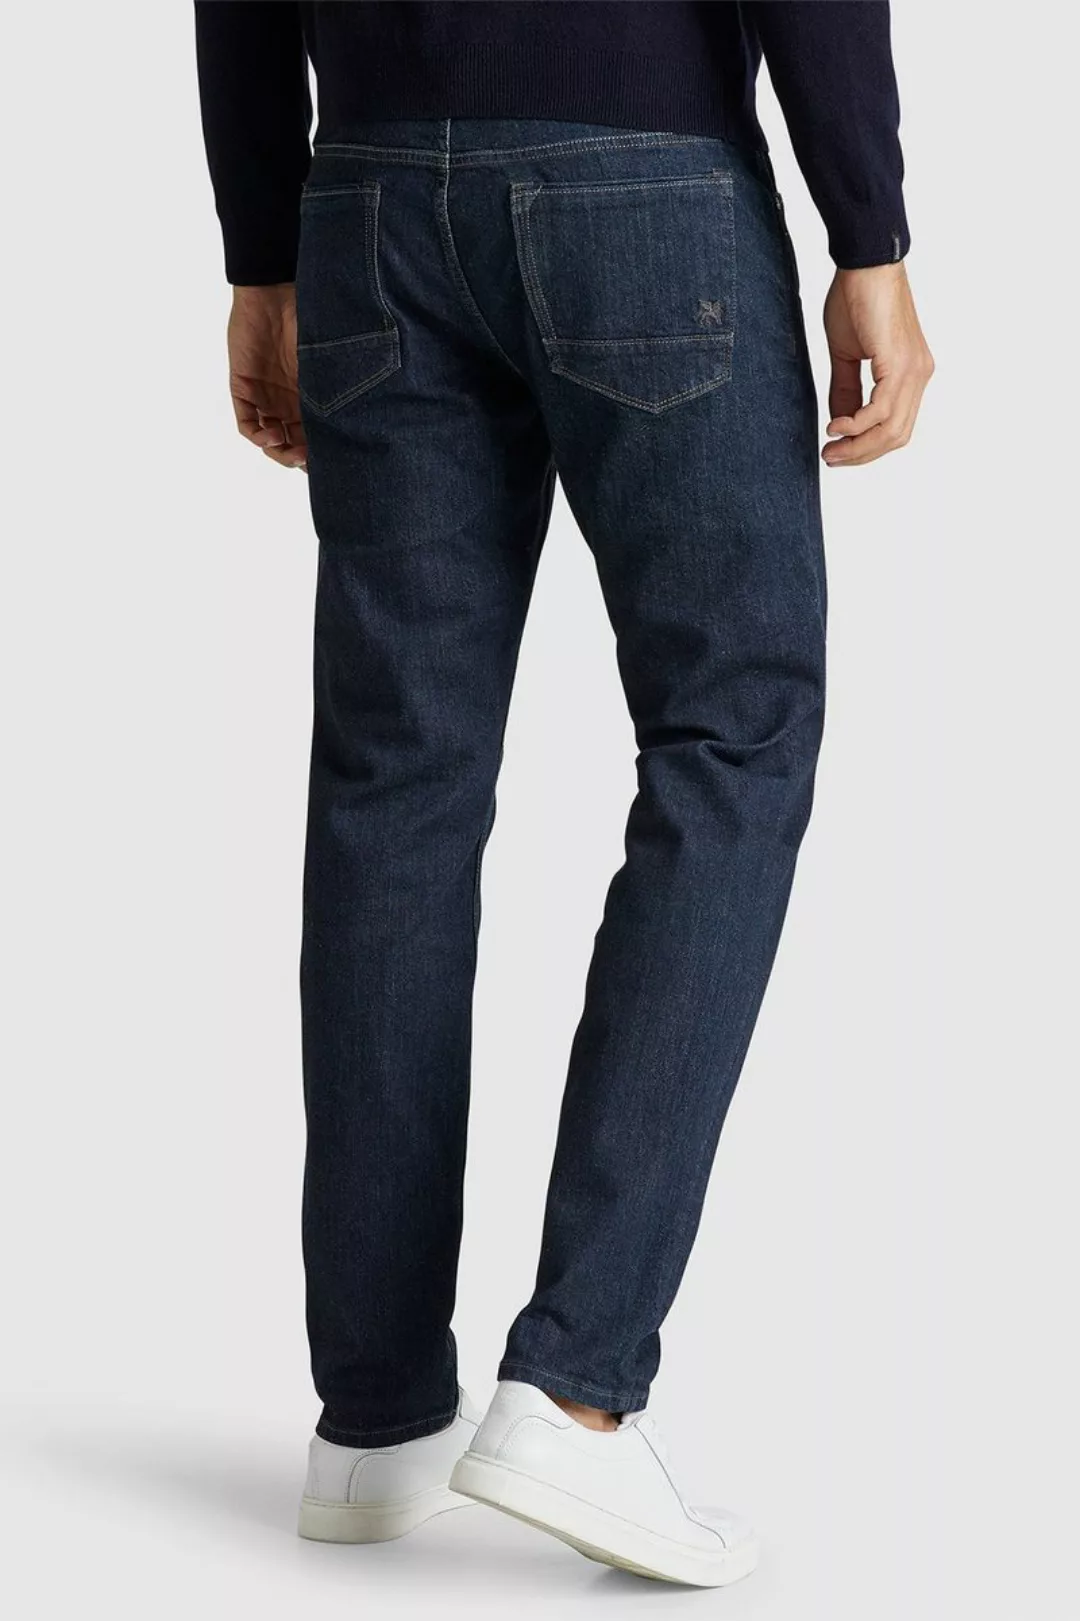 Vanguard Jeans V7 Rider Dunkelblau - Größe W 34 - L 36 günstig online kaufen